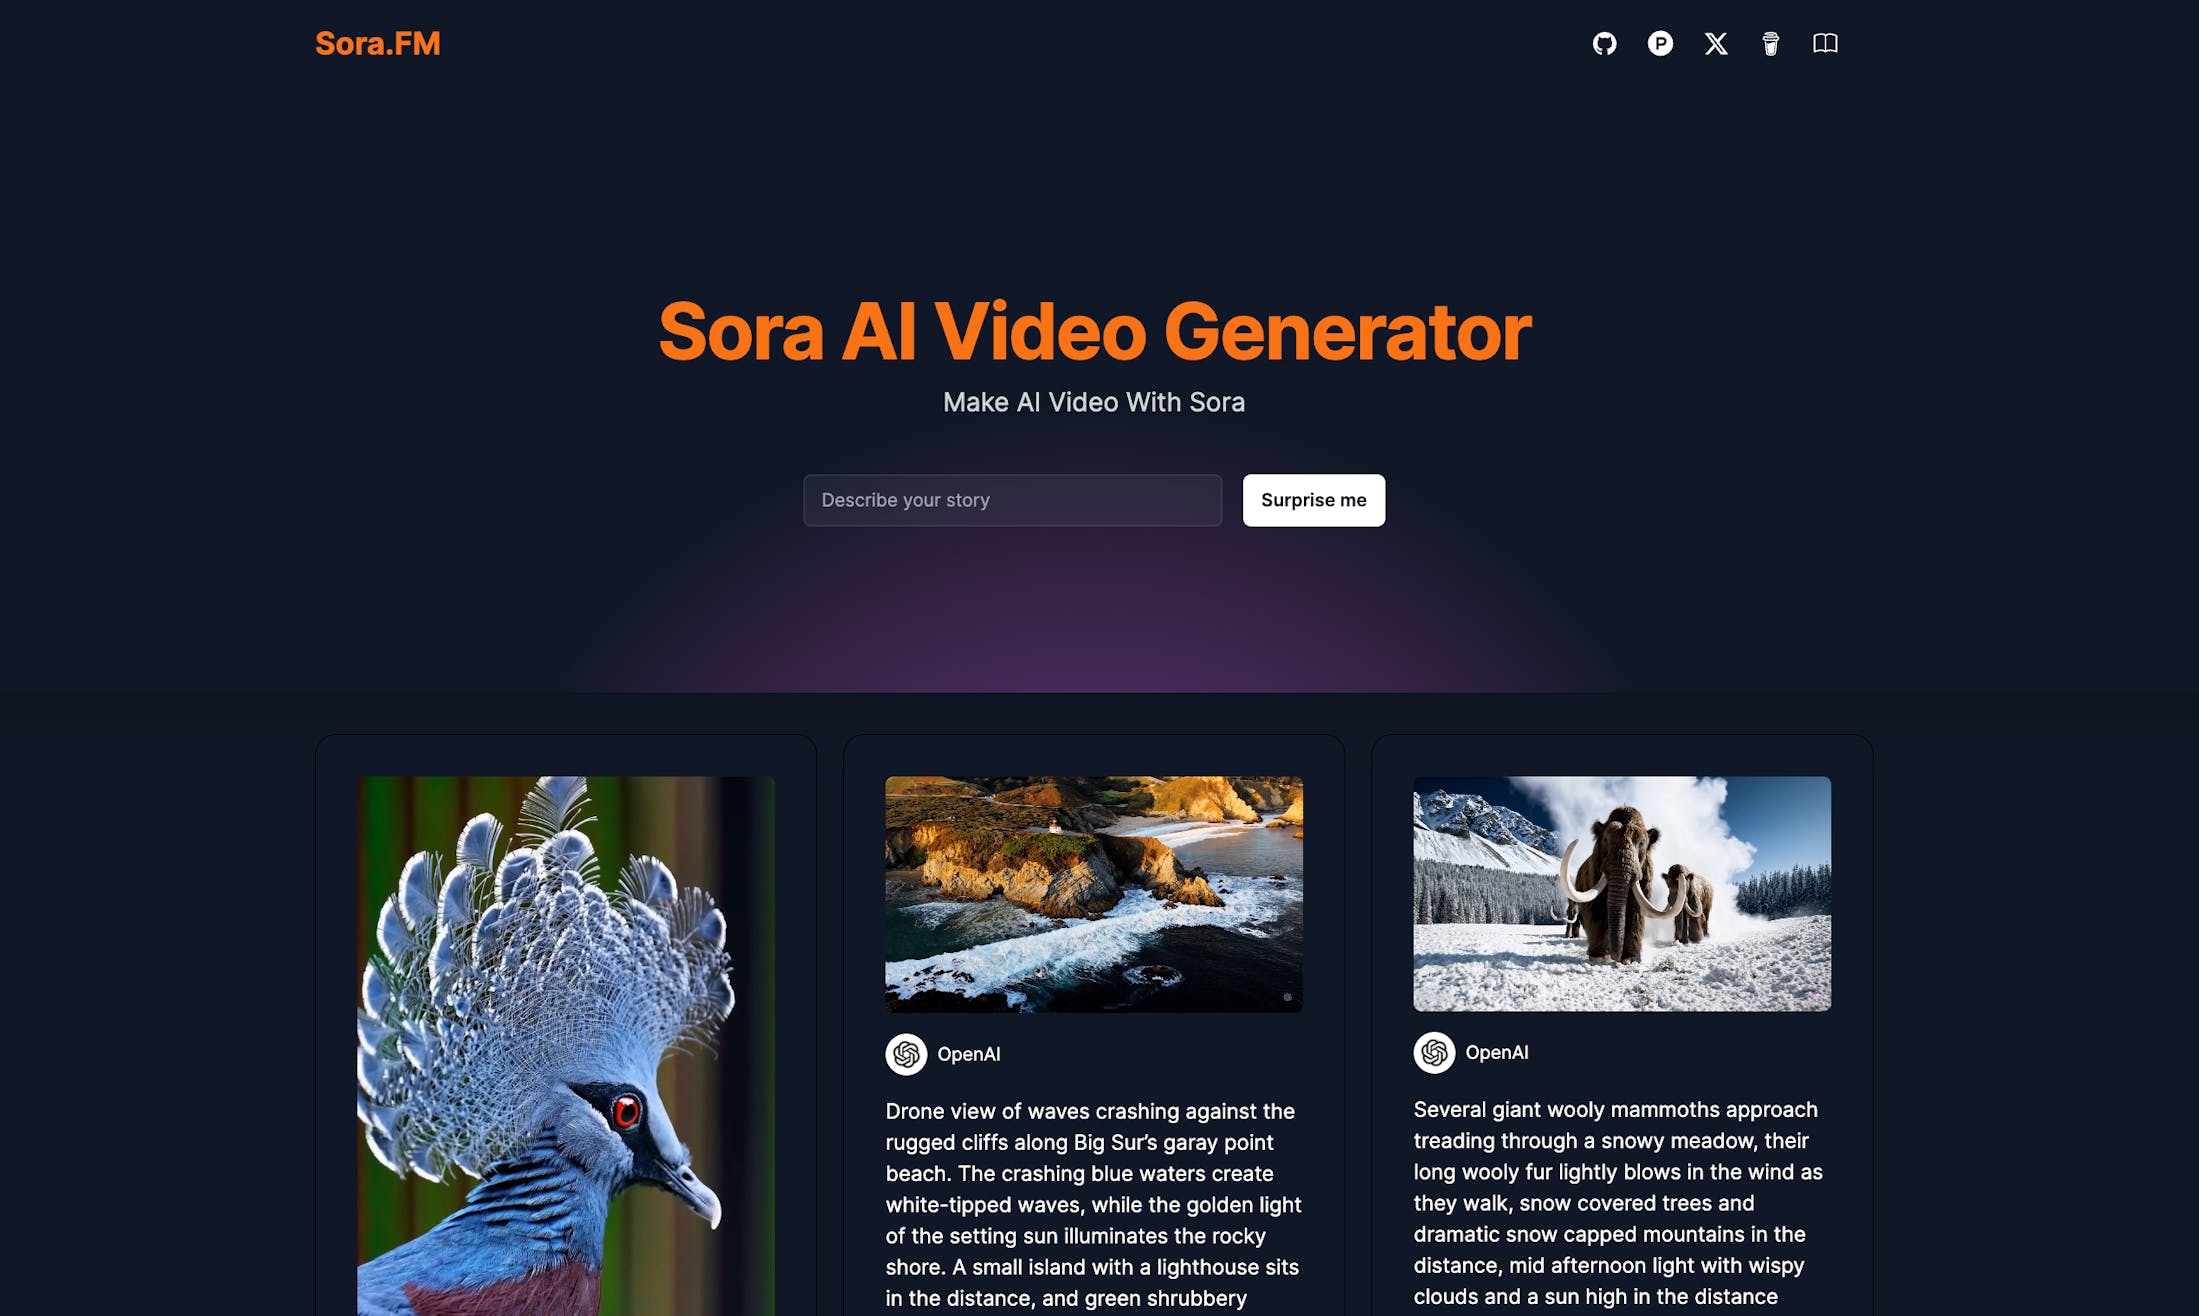 开源一个 Sora AI Video Generator